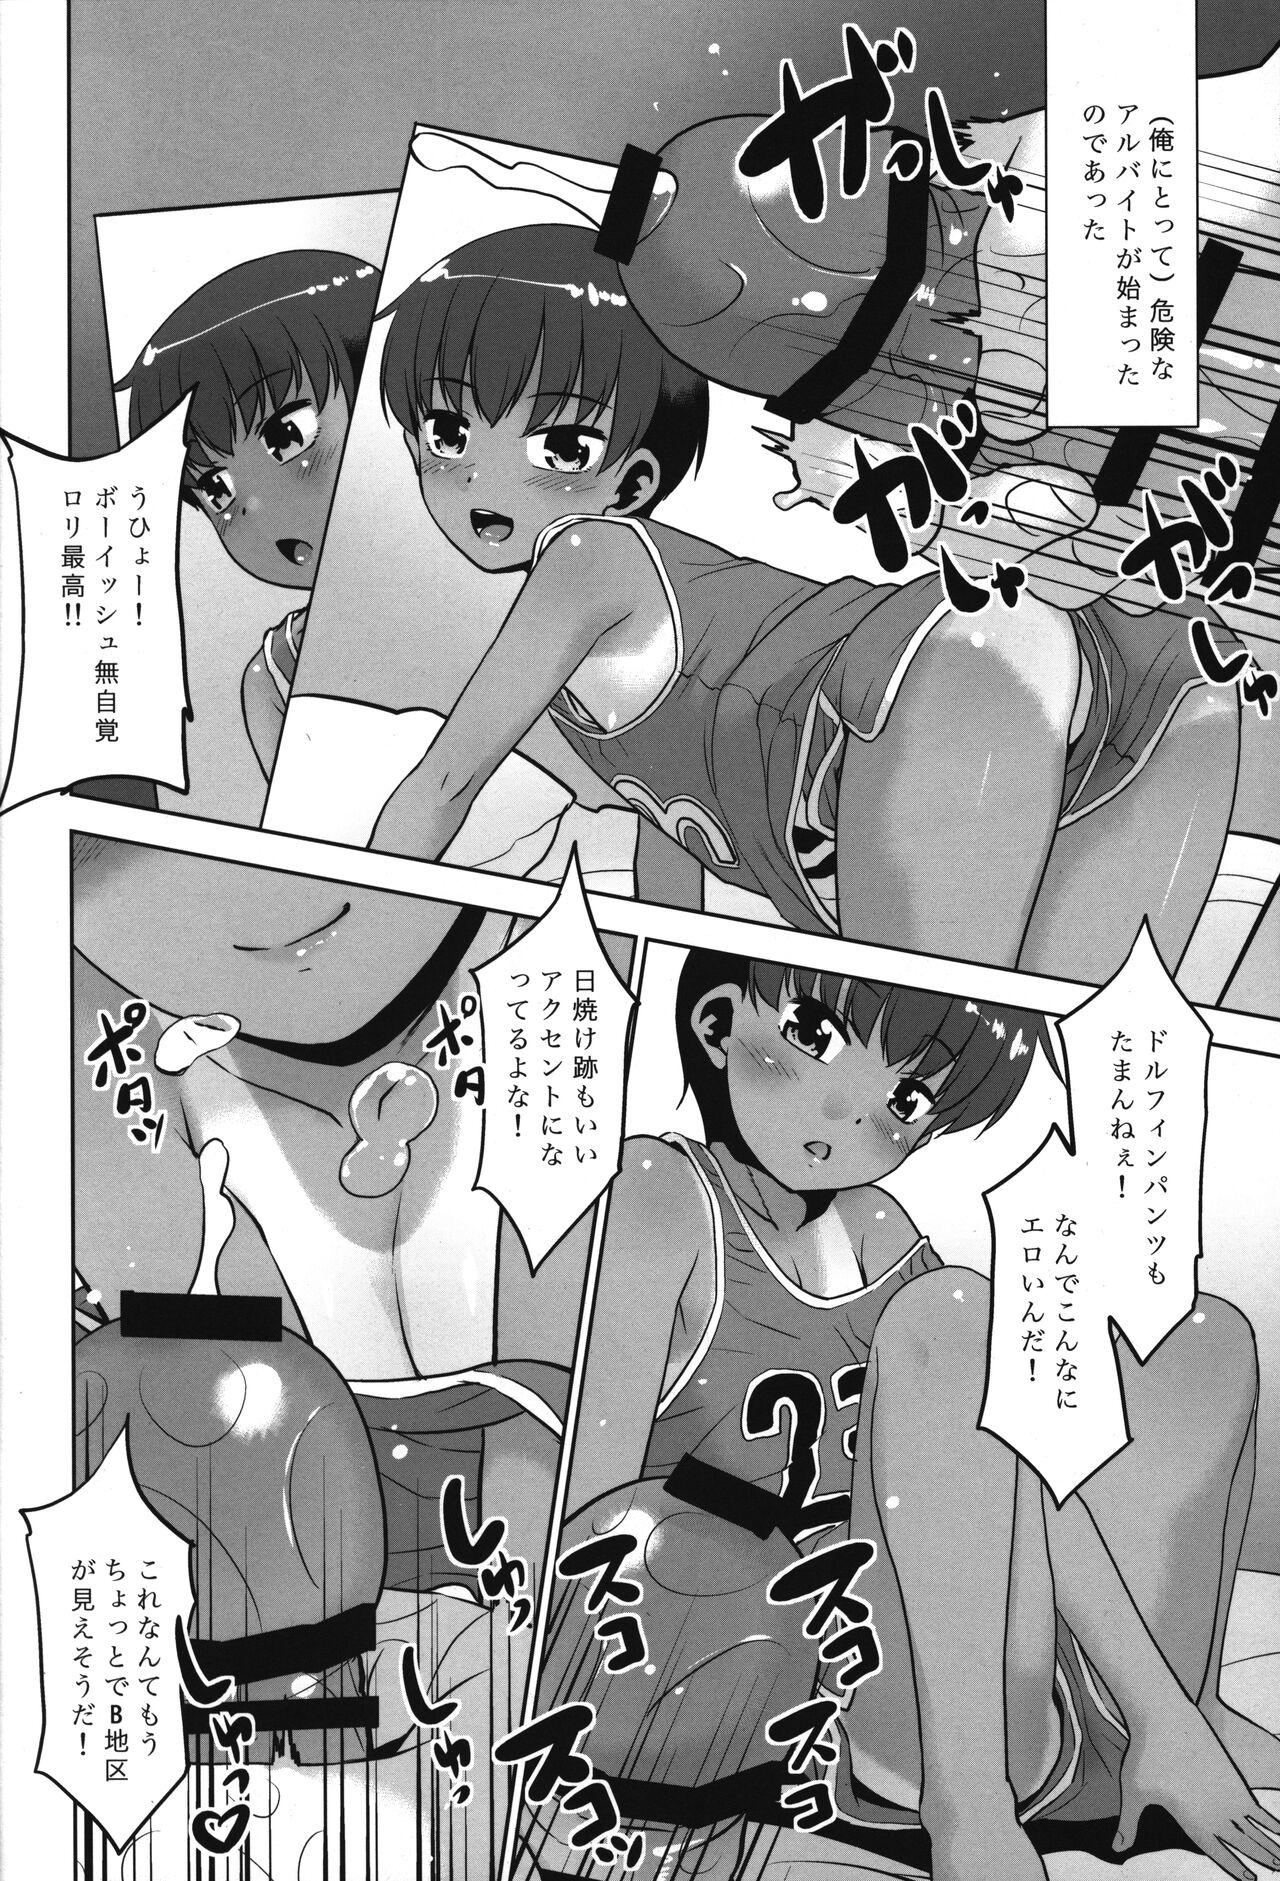 Man Taka-chan Okane Kashite! Nandemo suru kara!! - Original Reverse Cowgirl - Page 5